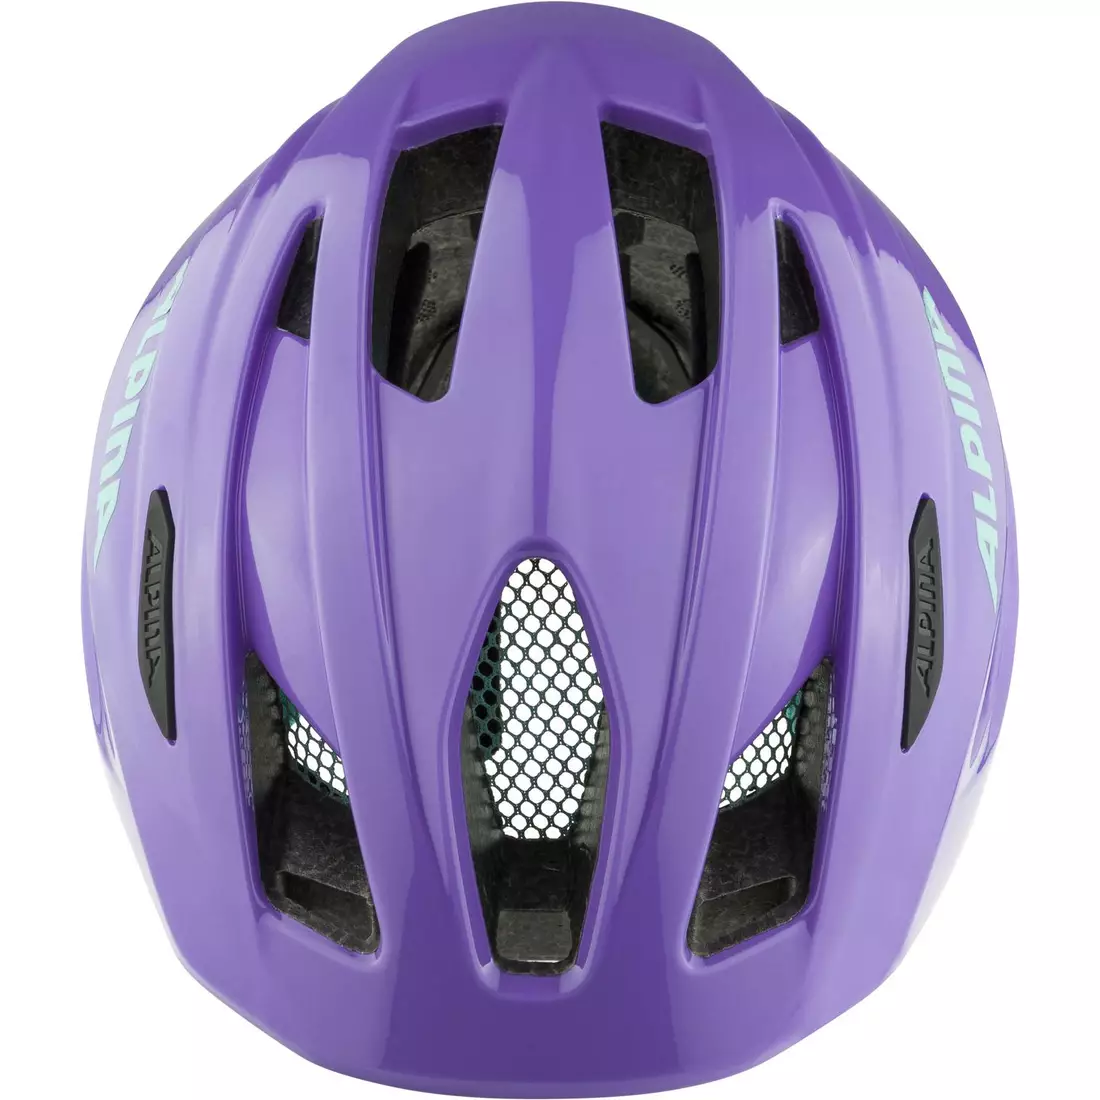 ALPINA PICO dziecięcy kask rowerowy, purple gloss